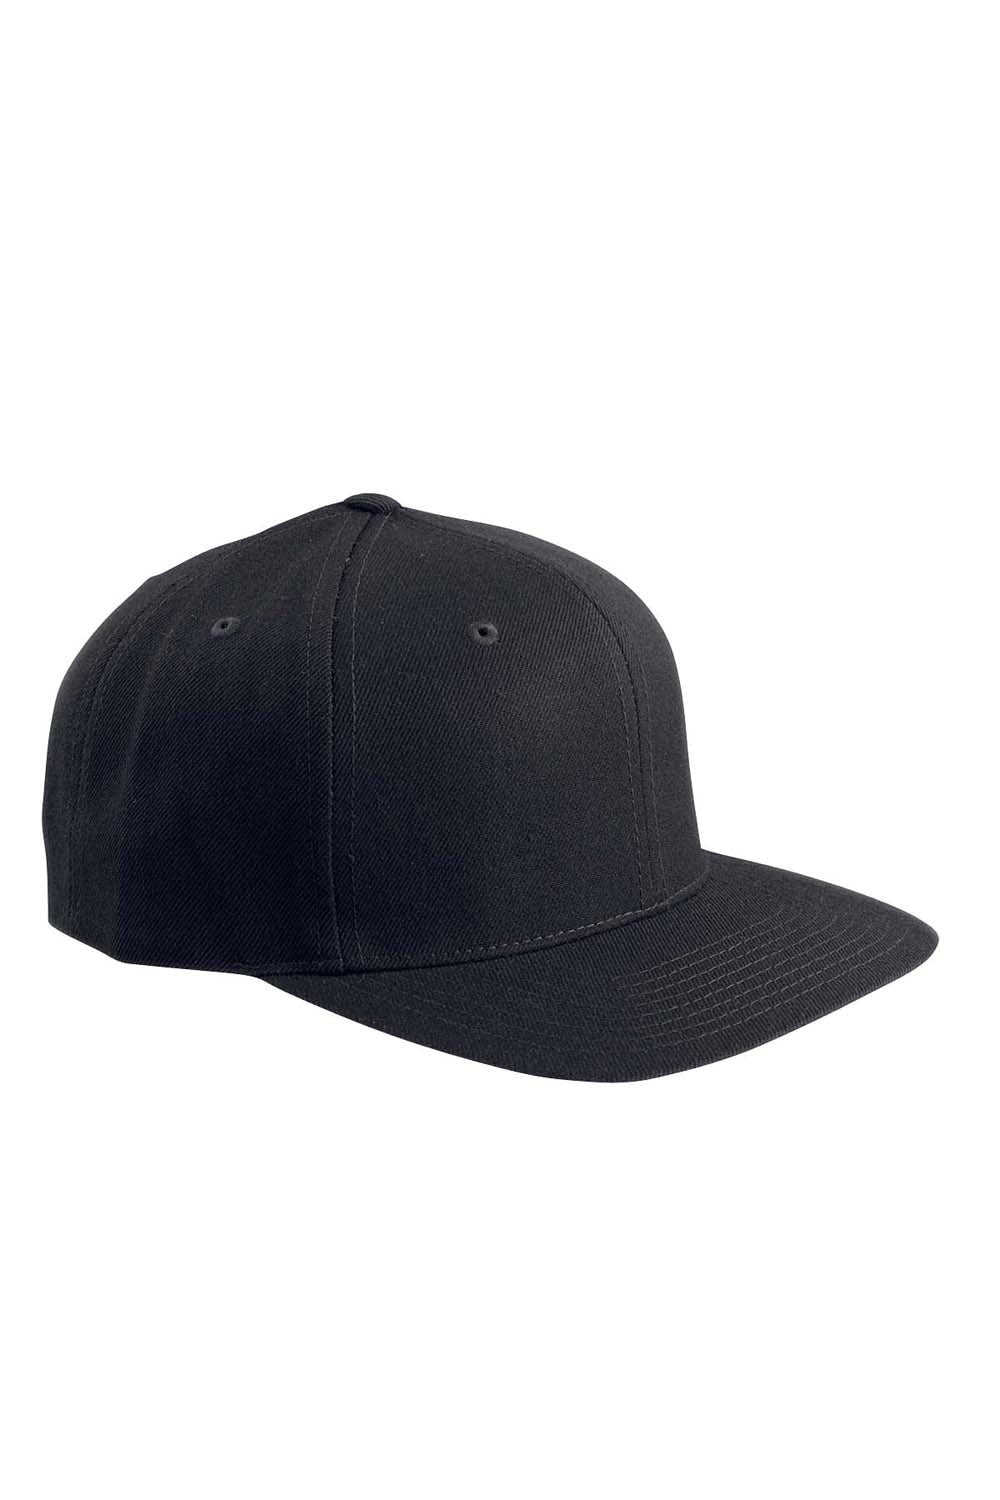 Yupoong 6089 Mens Adjustable Hat Black Front